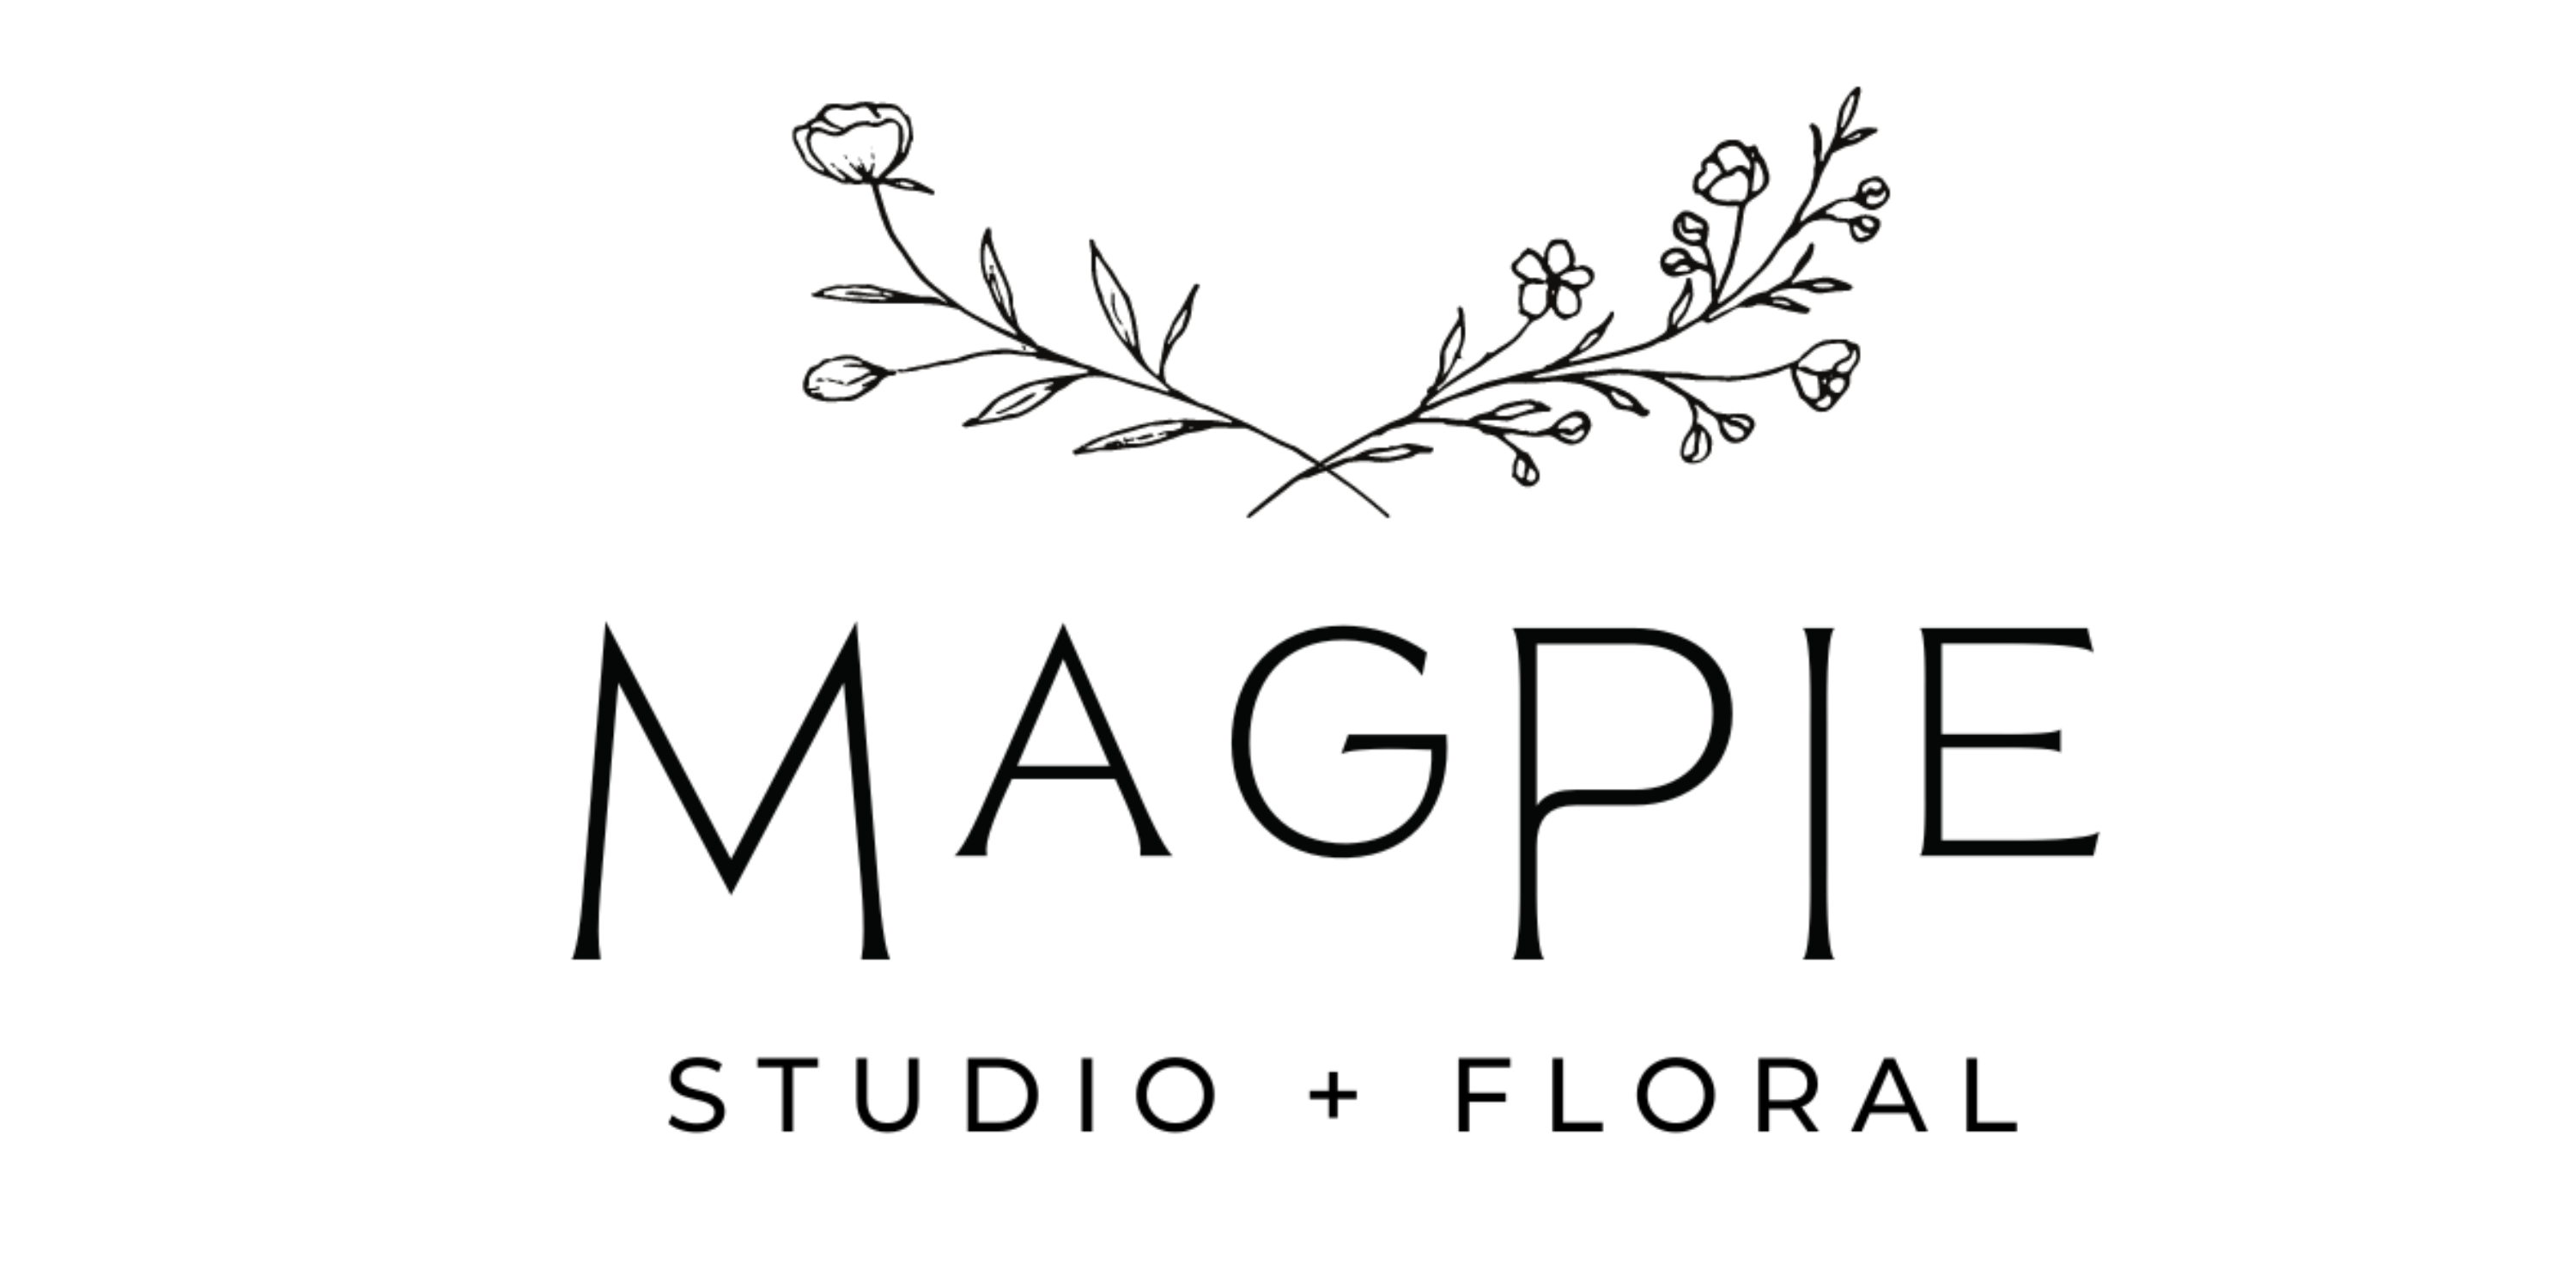 Magpie Studio + Floral